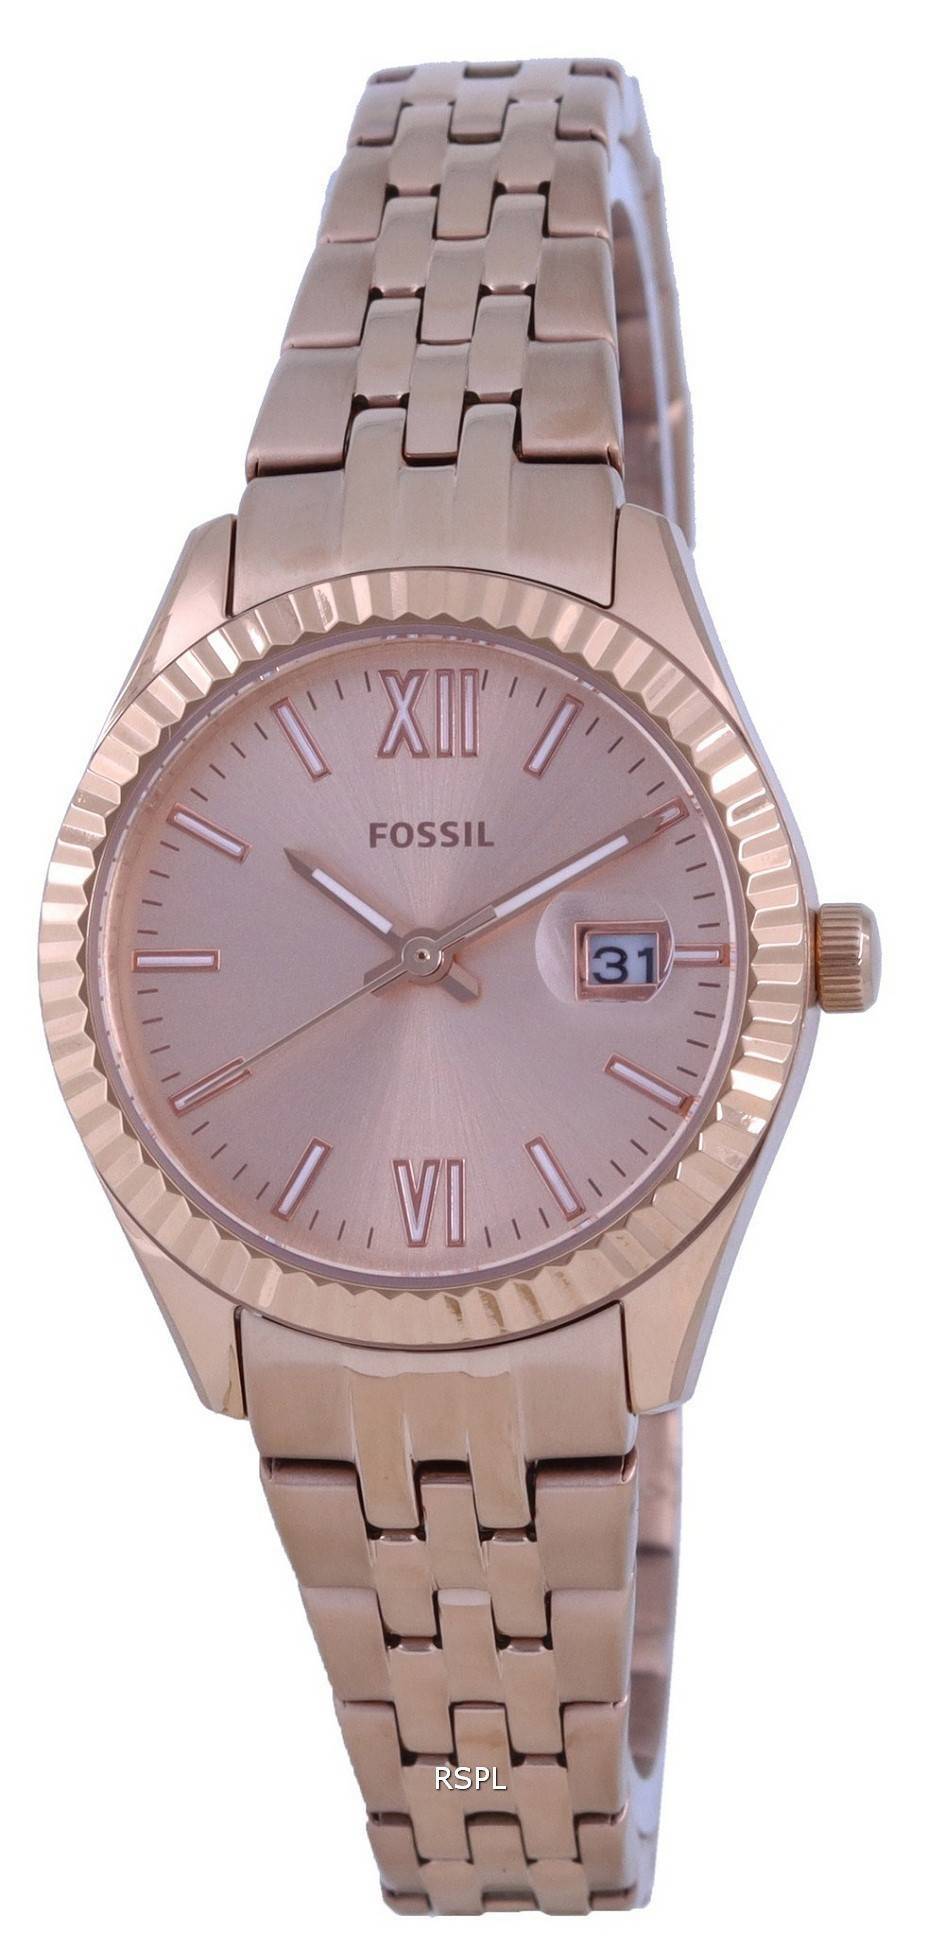 화석 스칼렛 마이크로 로즈 골드 톤 다이얼 쿼츠 ES4992 여성용 시계